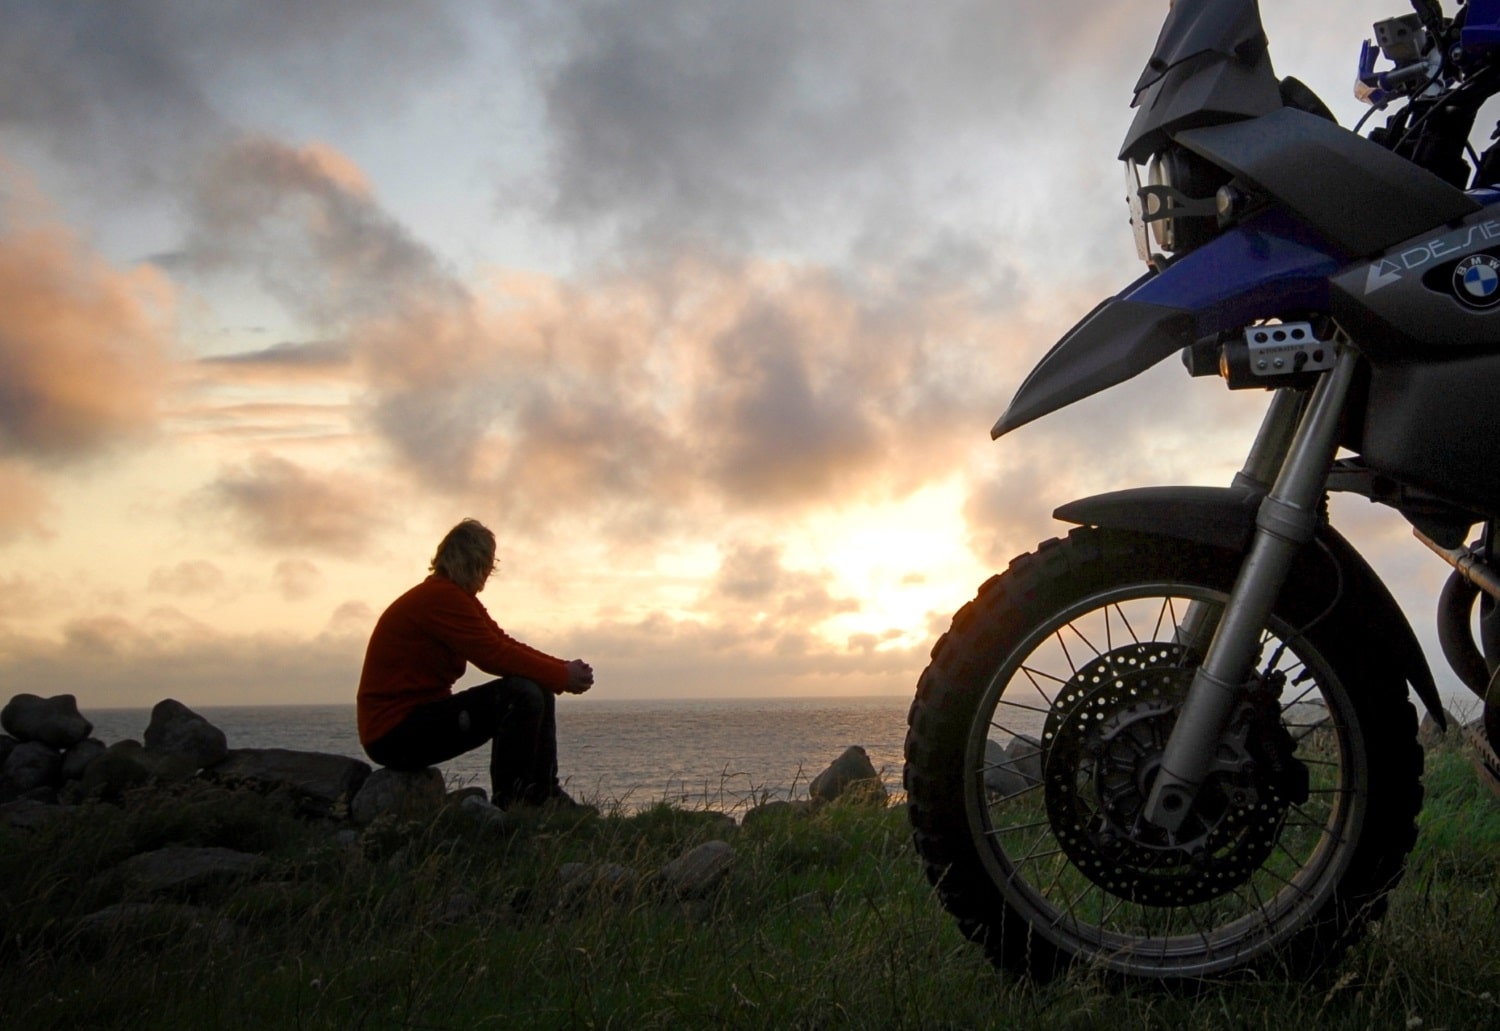 Moto-pneumatici.it chiama a raccolta i motociclisti per la terza “Biker Summer 2015”